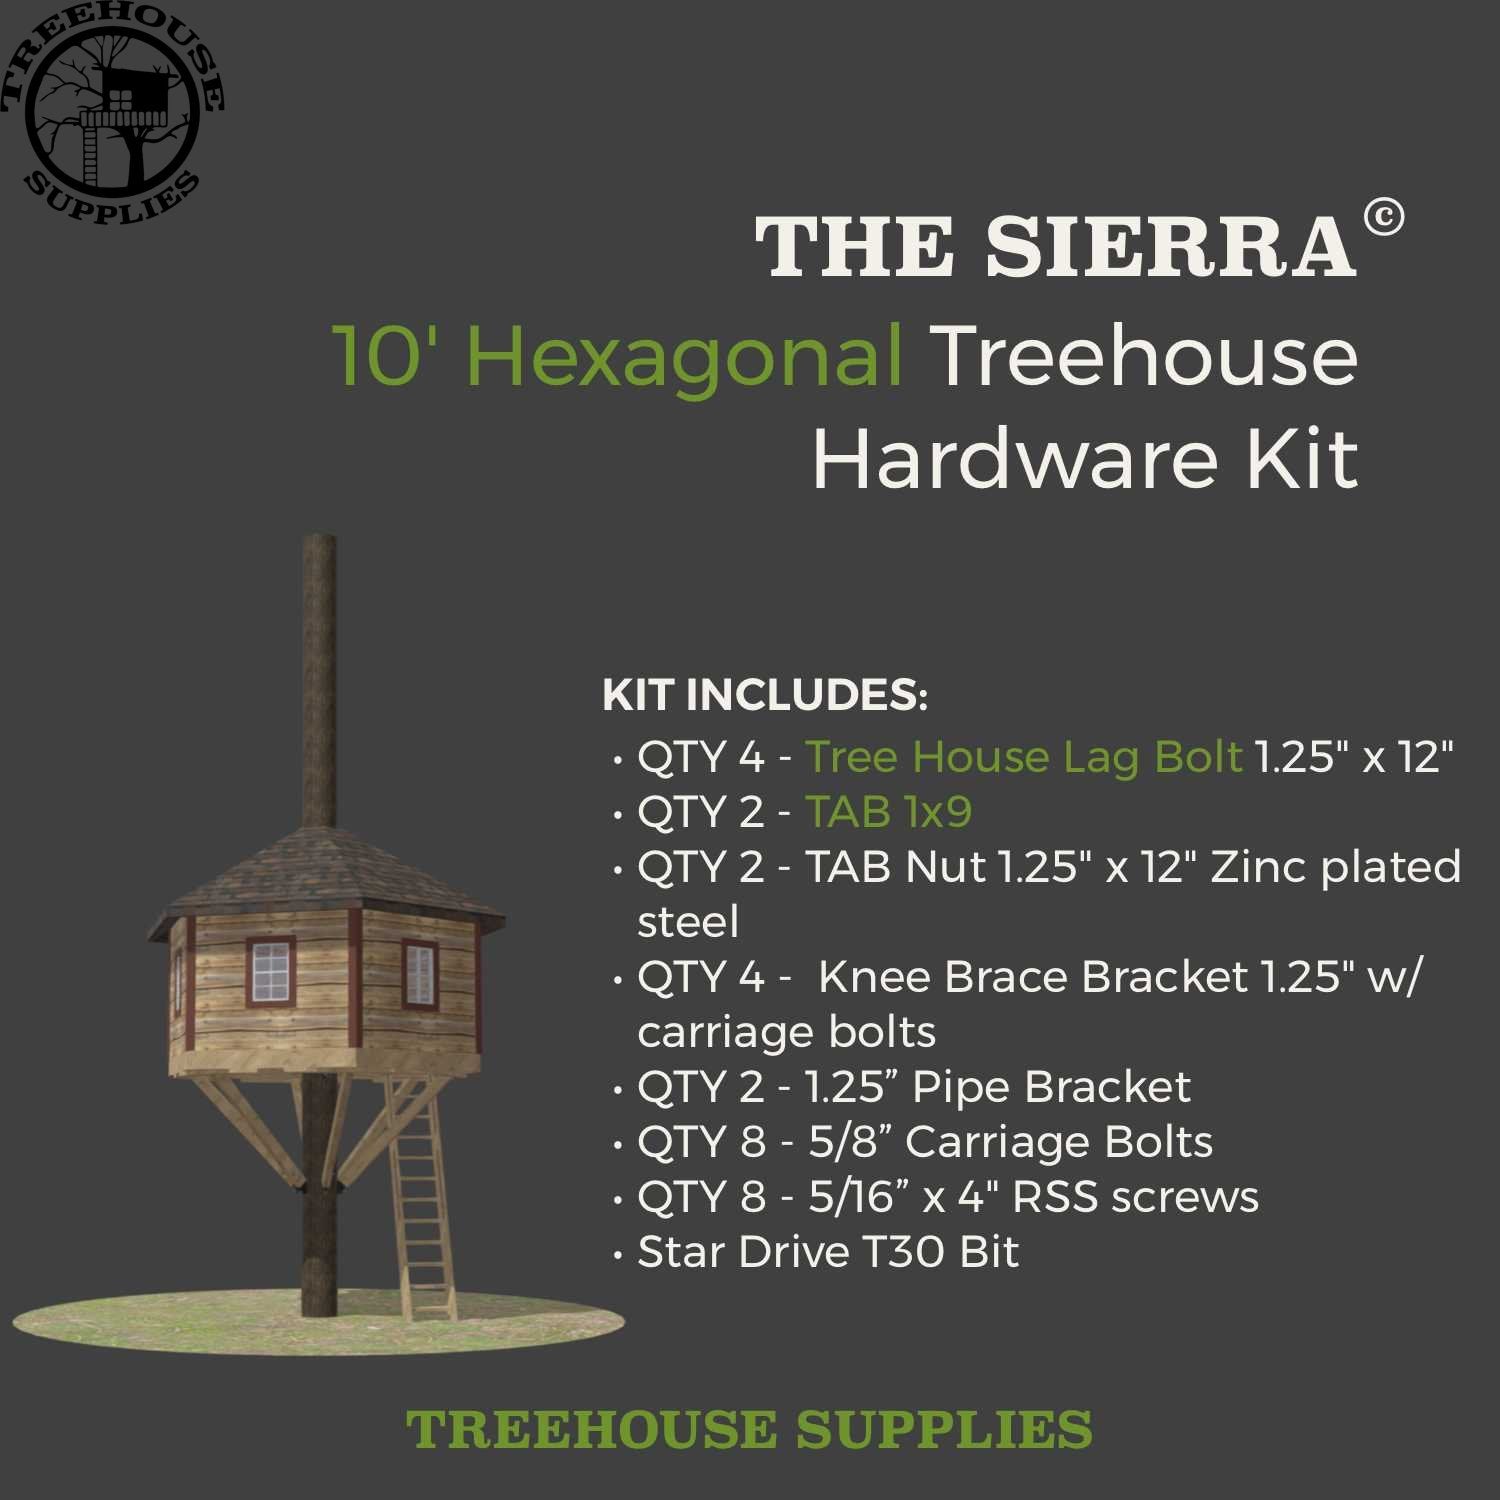 THE SIERRA: 10' Hexagonal Treehouse Hardware Kit